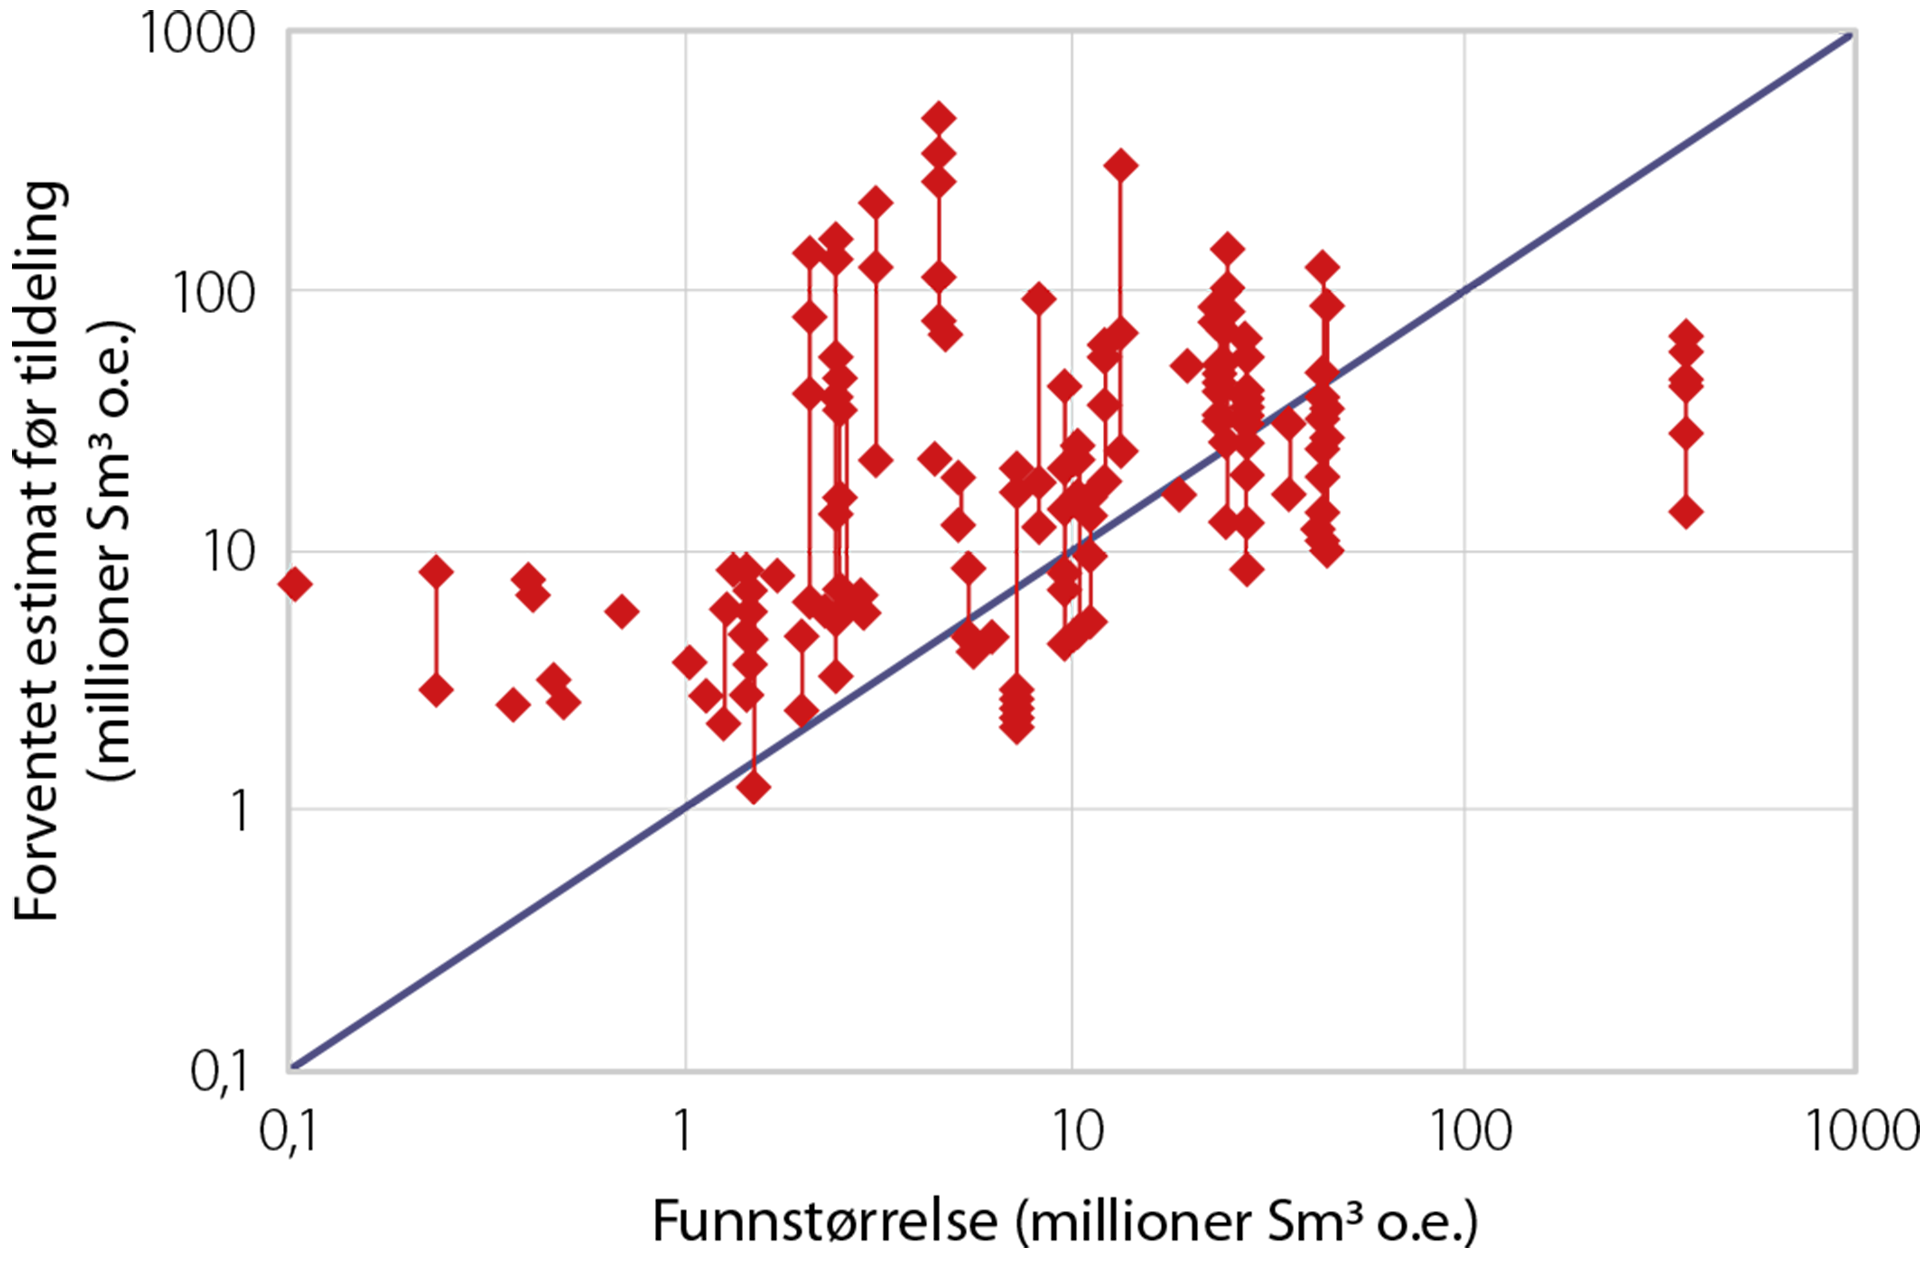 Figur 7.2 Selskapenes forventningsestimat før tildeling, sammenliknet med funnstørrelse (TFO-runder fra og med 2003 til og med 2011, samt 16. til 22. konsesjonsrunde). Vertikale røde linjer knytter sammen ulike forventningsestimat fra forskjellige selskap for samme funn. Enkelte funn har estimat fra bare ett selskap.